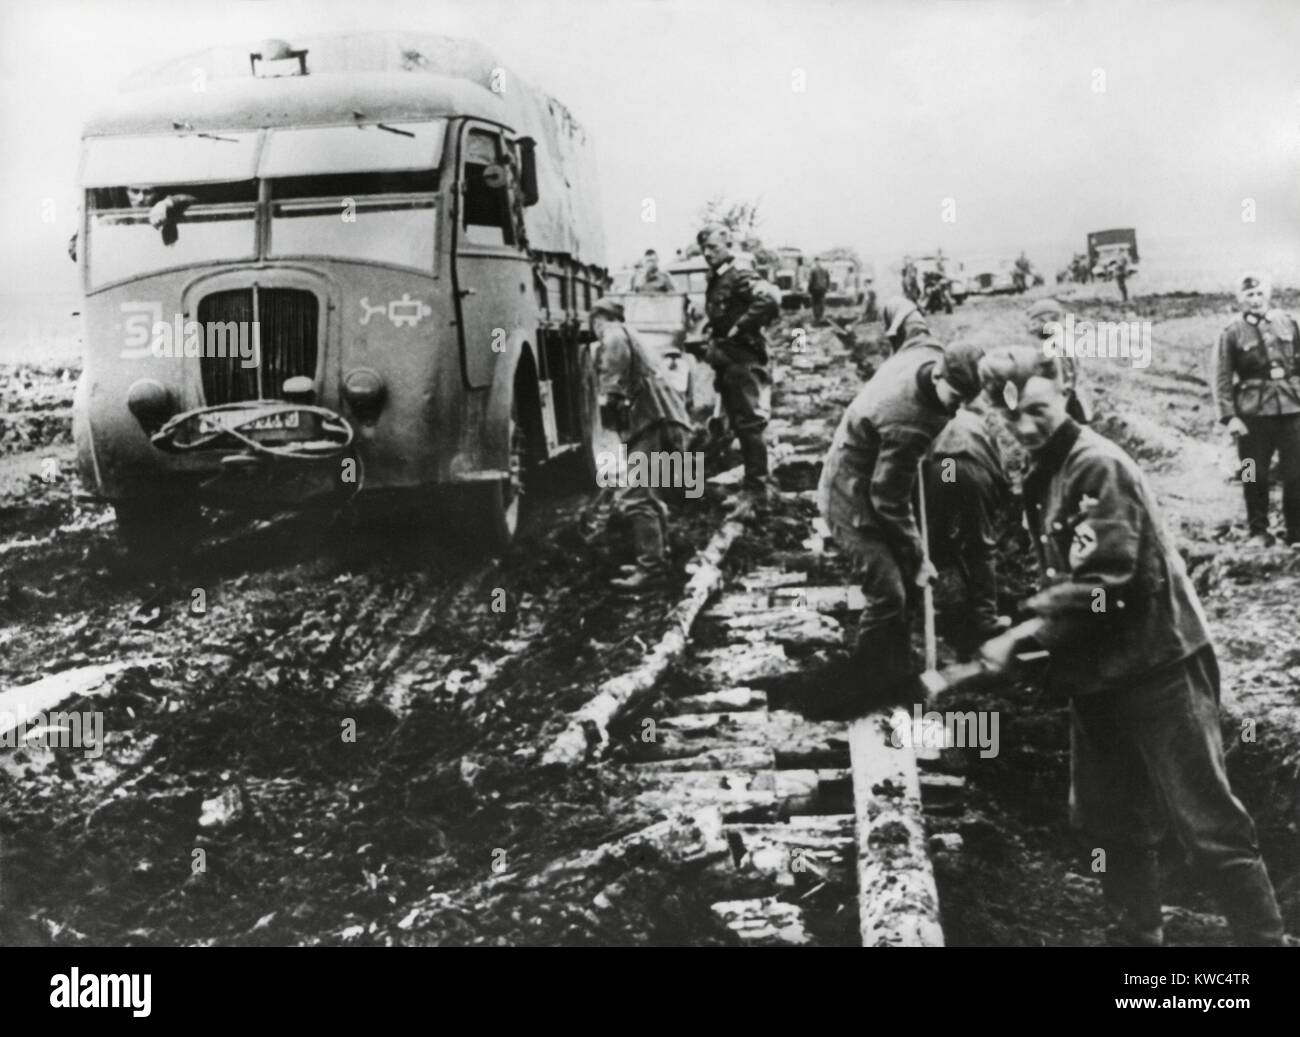 Deutsche Armee kämpft im Herbst Schlamm der Armee in Stalingrad im Okt. 1942 zu liefern. Roadbuilders haben Protokolle eine Straße Bett zu erstellen, aber es ist immer noch unvollständig und instabil. Weltkrieg 2 (BSLOC 2015 13 110) Stockfoto